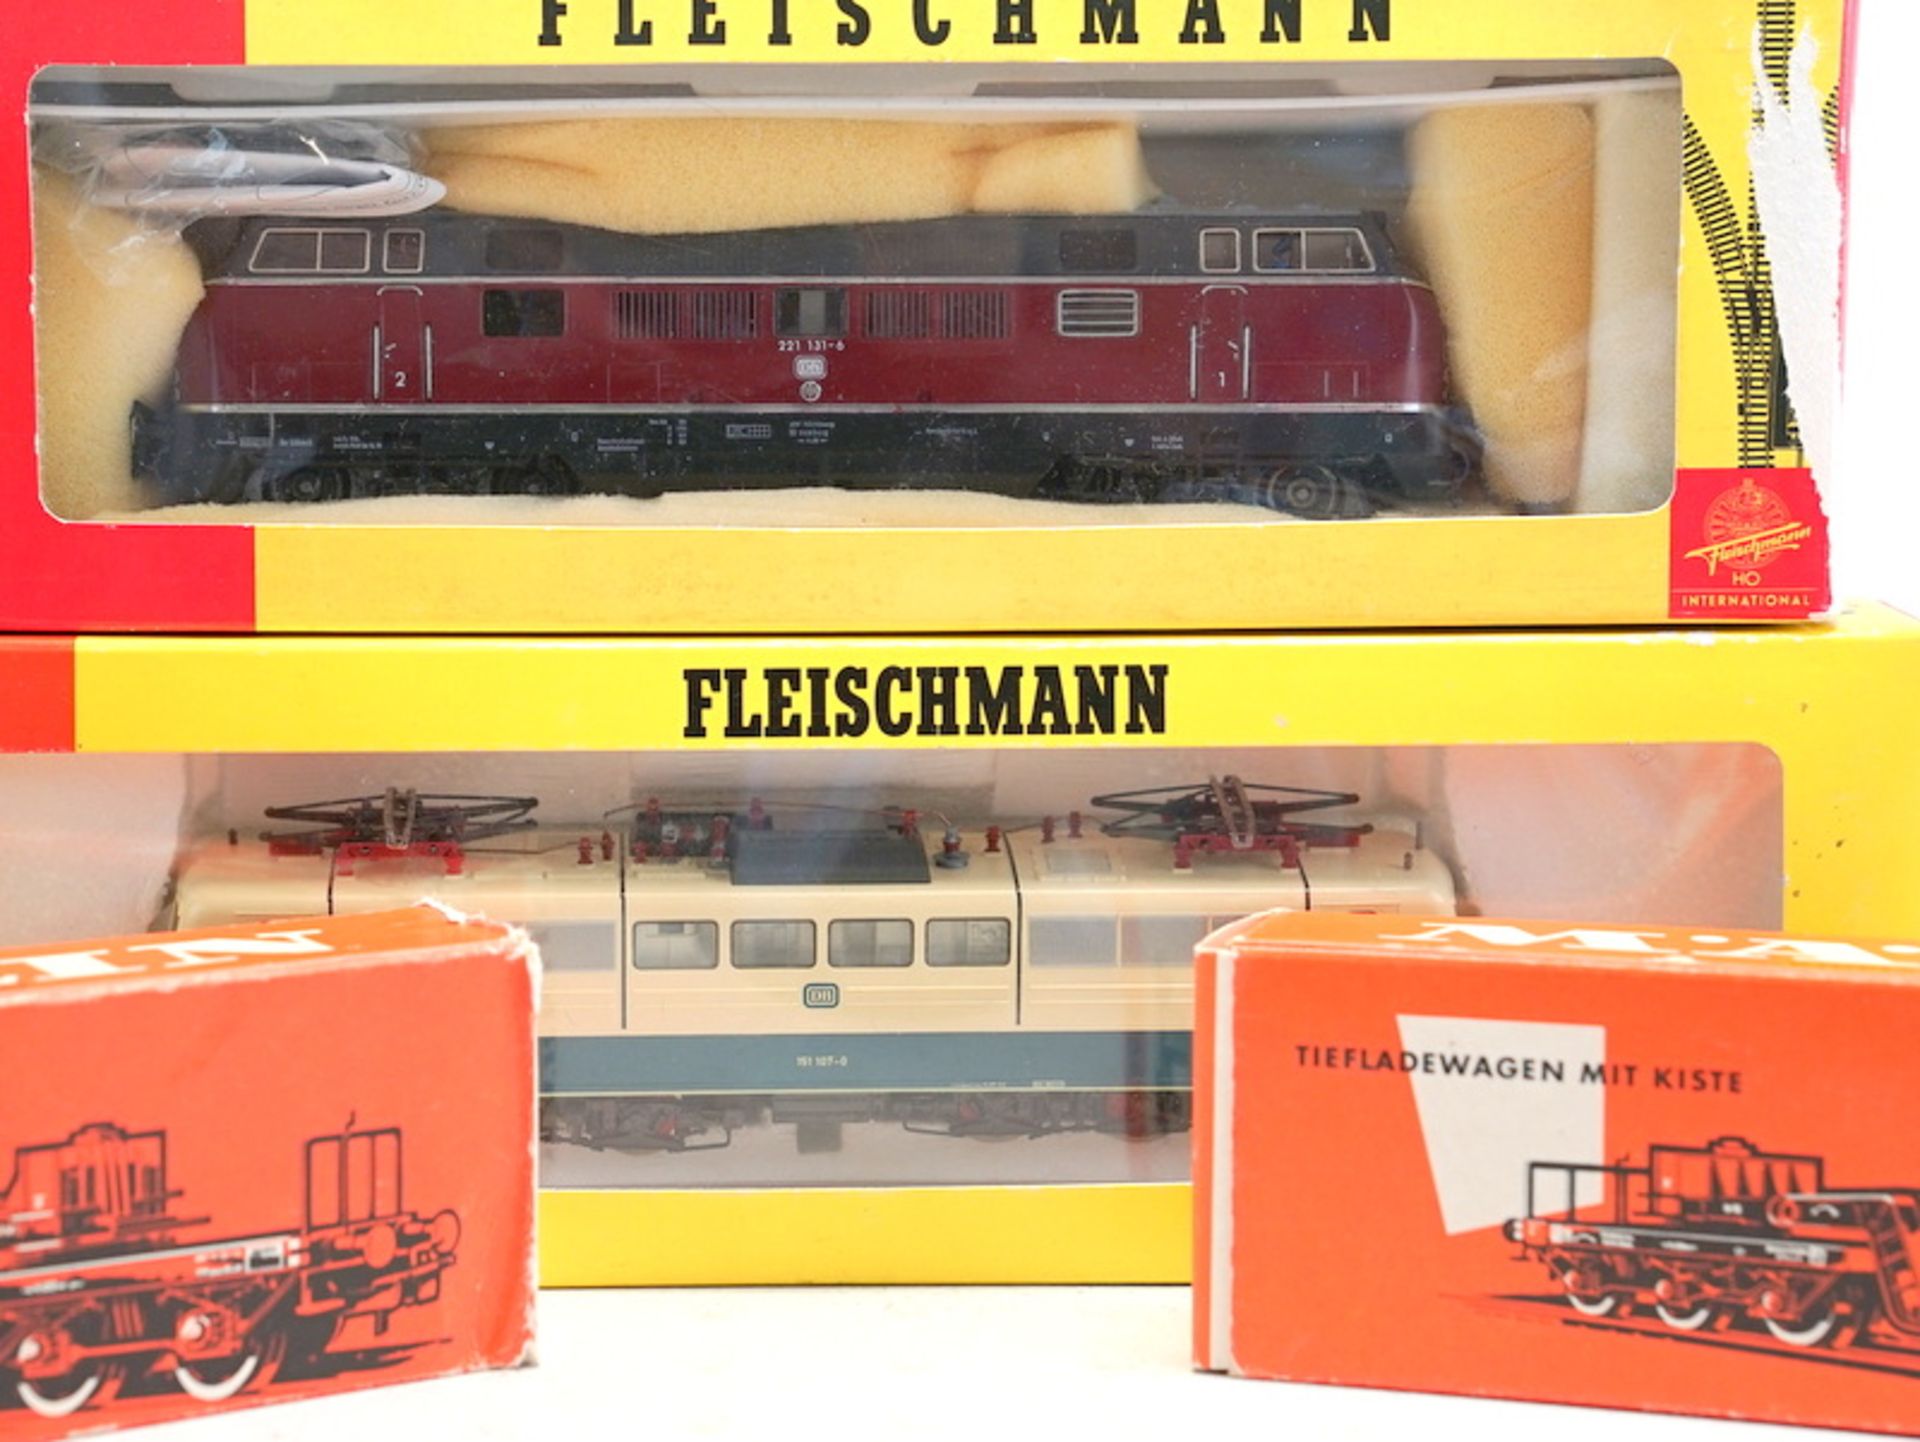 2 Fleischmann-Loks mit märklin-Tiefladewagen, Spur H0.